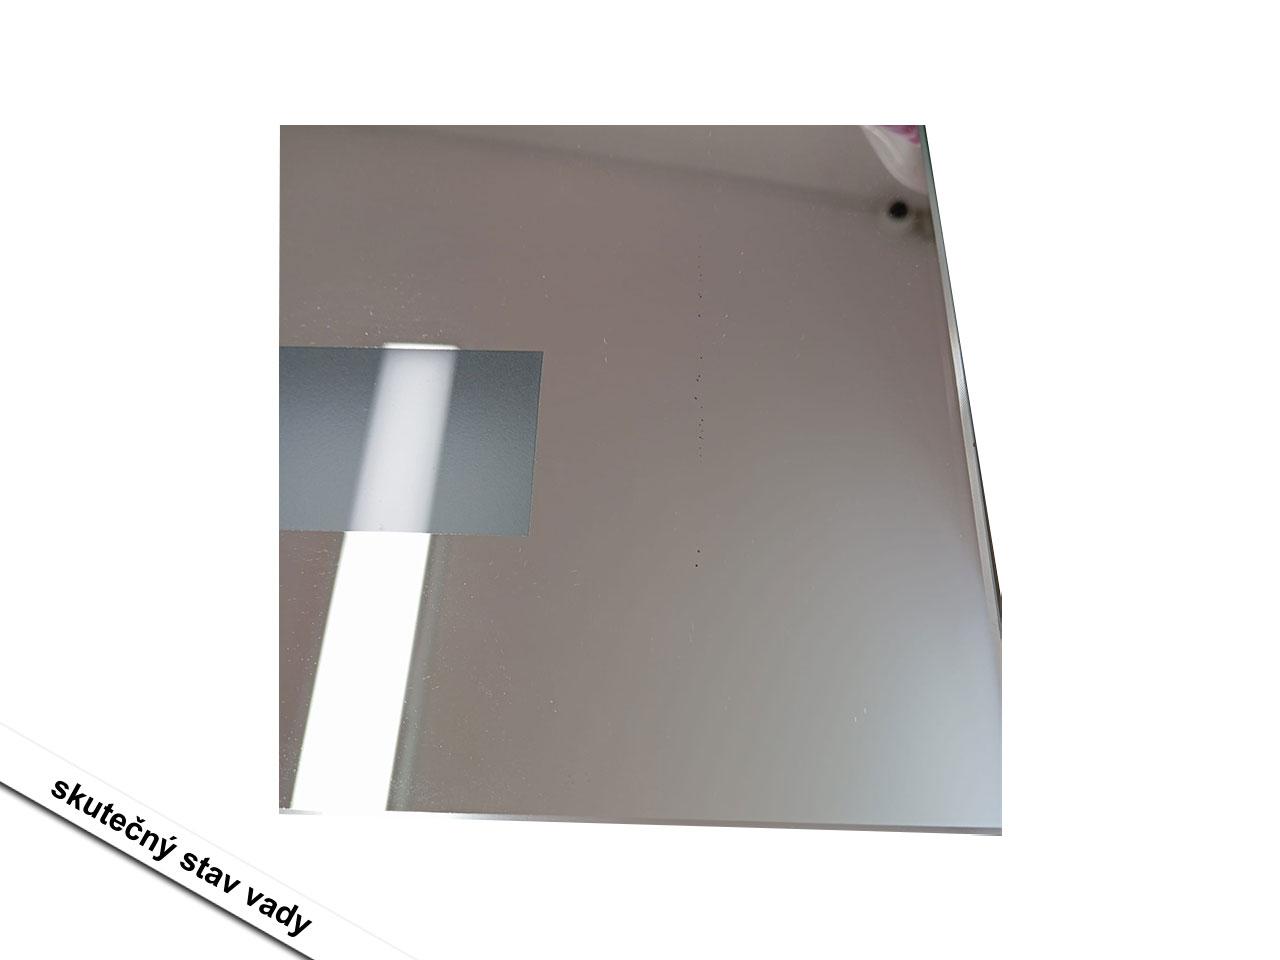 Nástěnné koupelnové zrcadlo 834-033V01, s LED osvětlením,  proti zamlžování, s dotykovým vypínačem, stříbrné, 70 x 50 x 2,7 cm